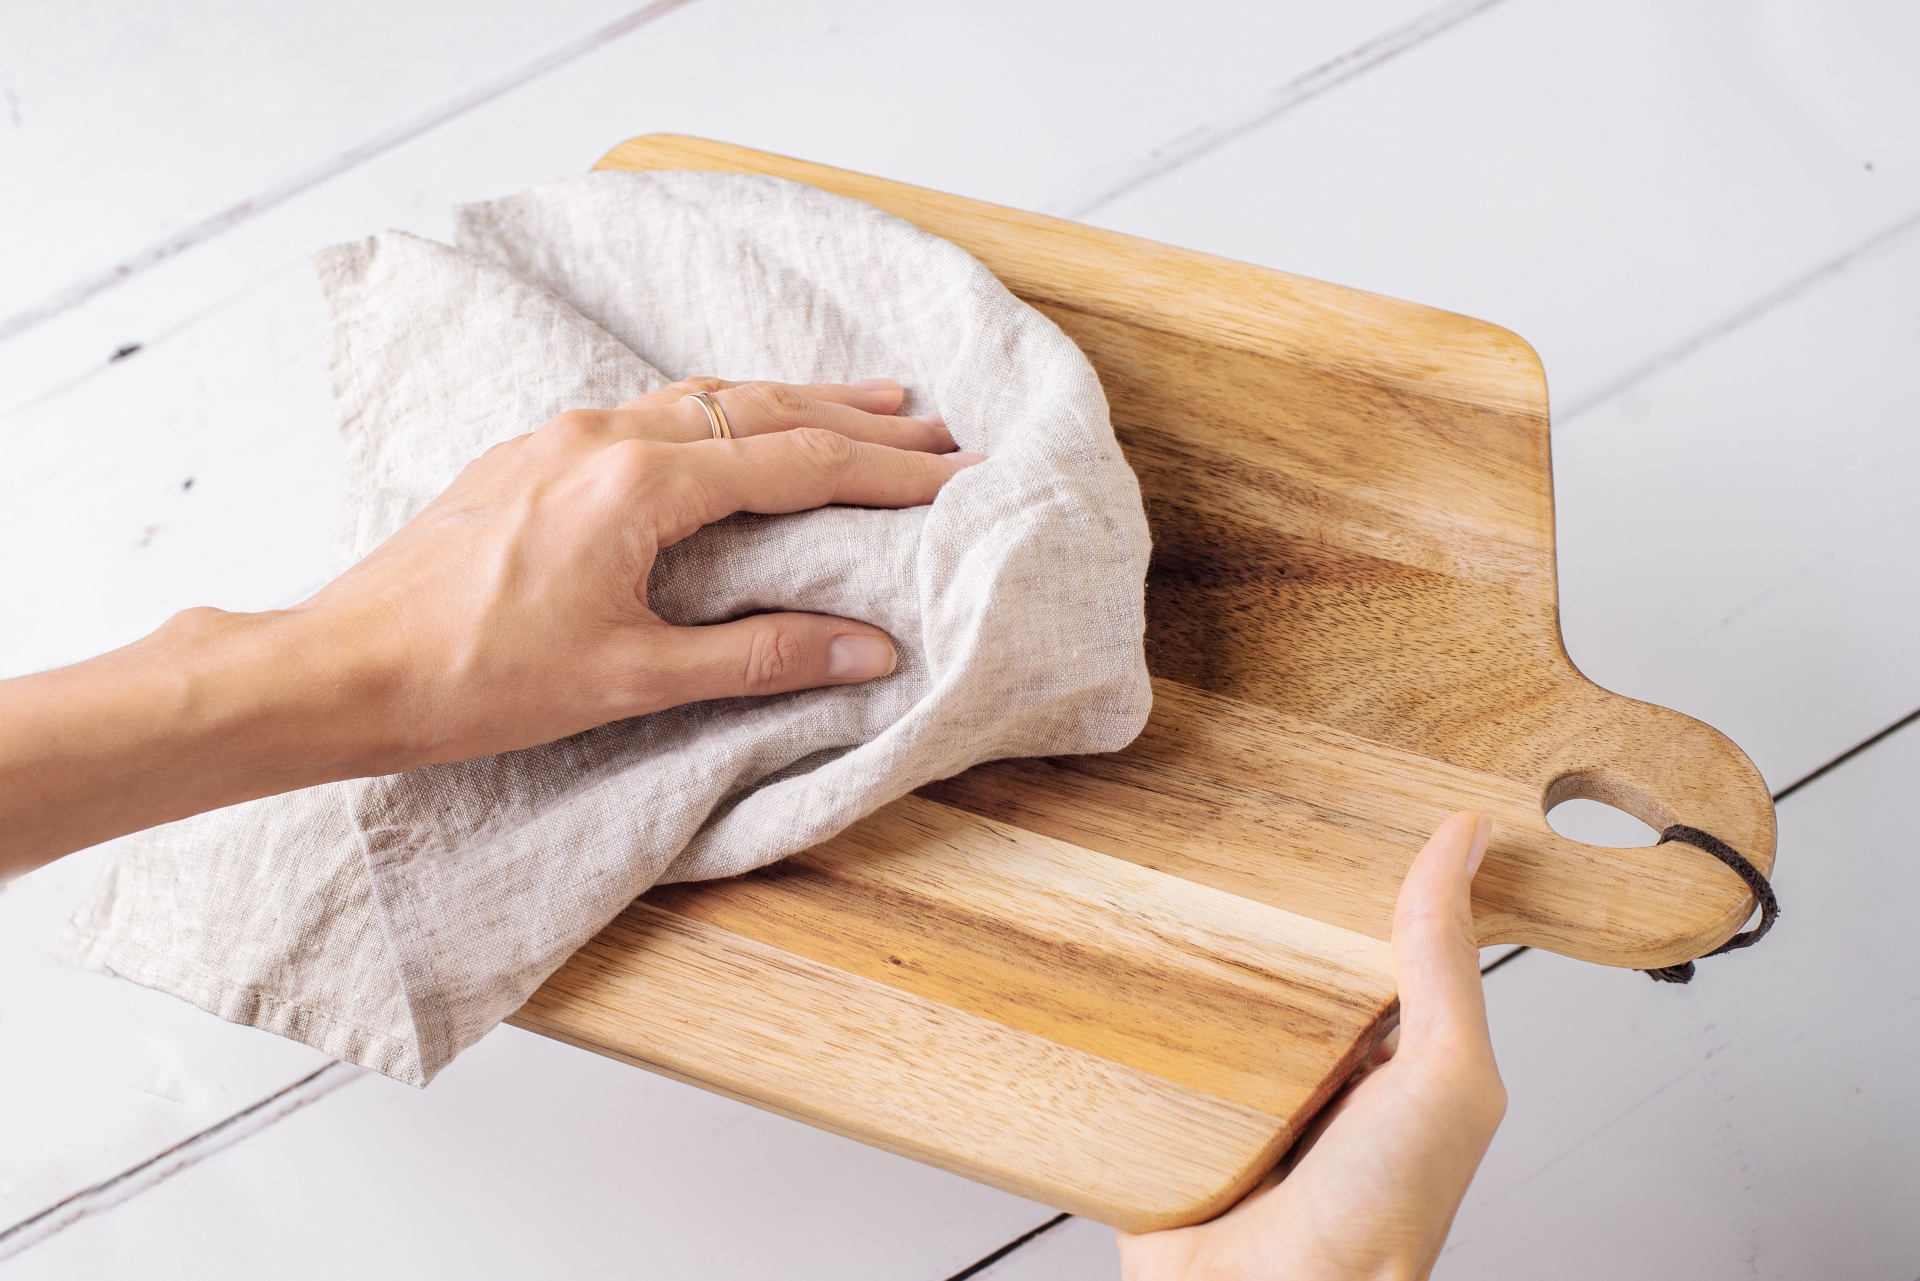 Lau khô thớt bằng khăn mềm hoặc thấm khô bằng khăn giấy.